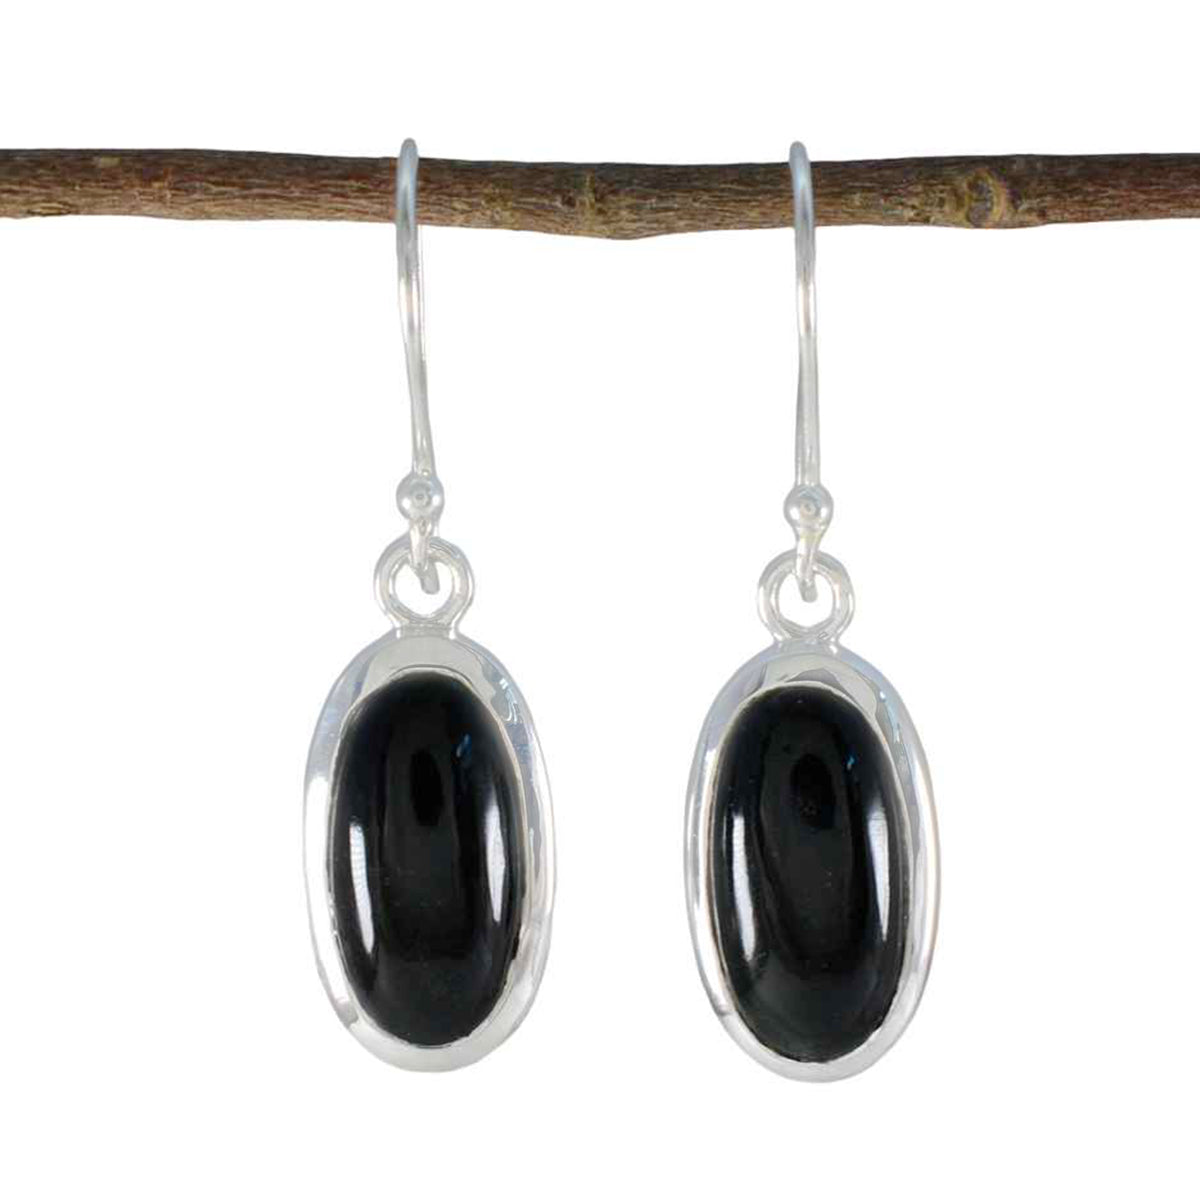 Riyo Aangenaam 925 Sterling Zilveren Oorbel Voor Vrouwen Zwarte Onyx Oorbel Bezel Setting Zwarte Oorbel Dangle Earring